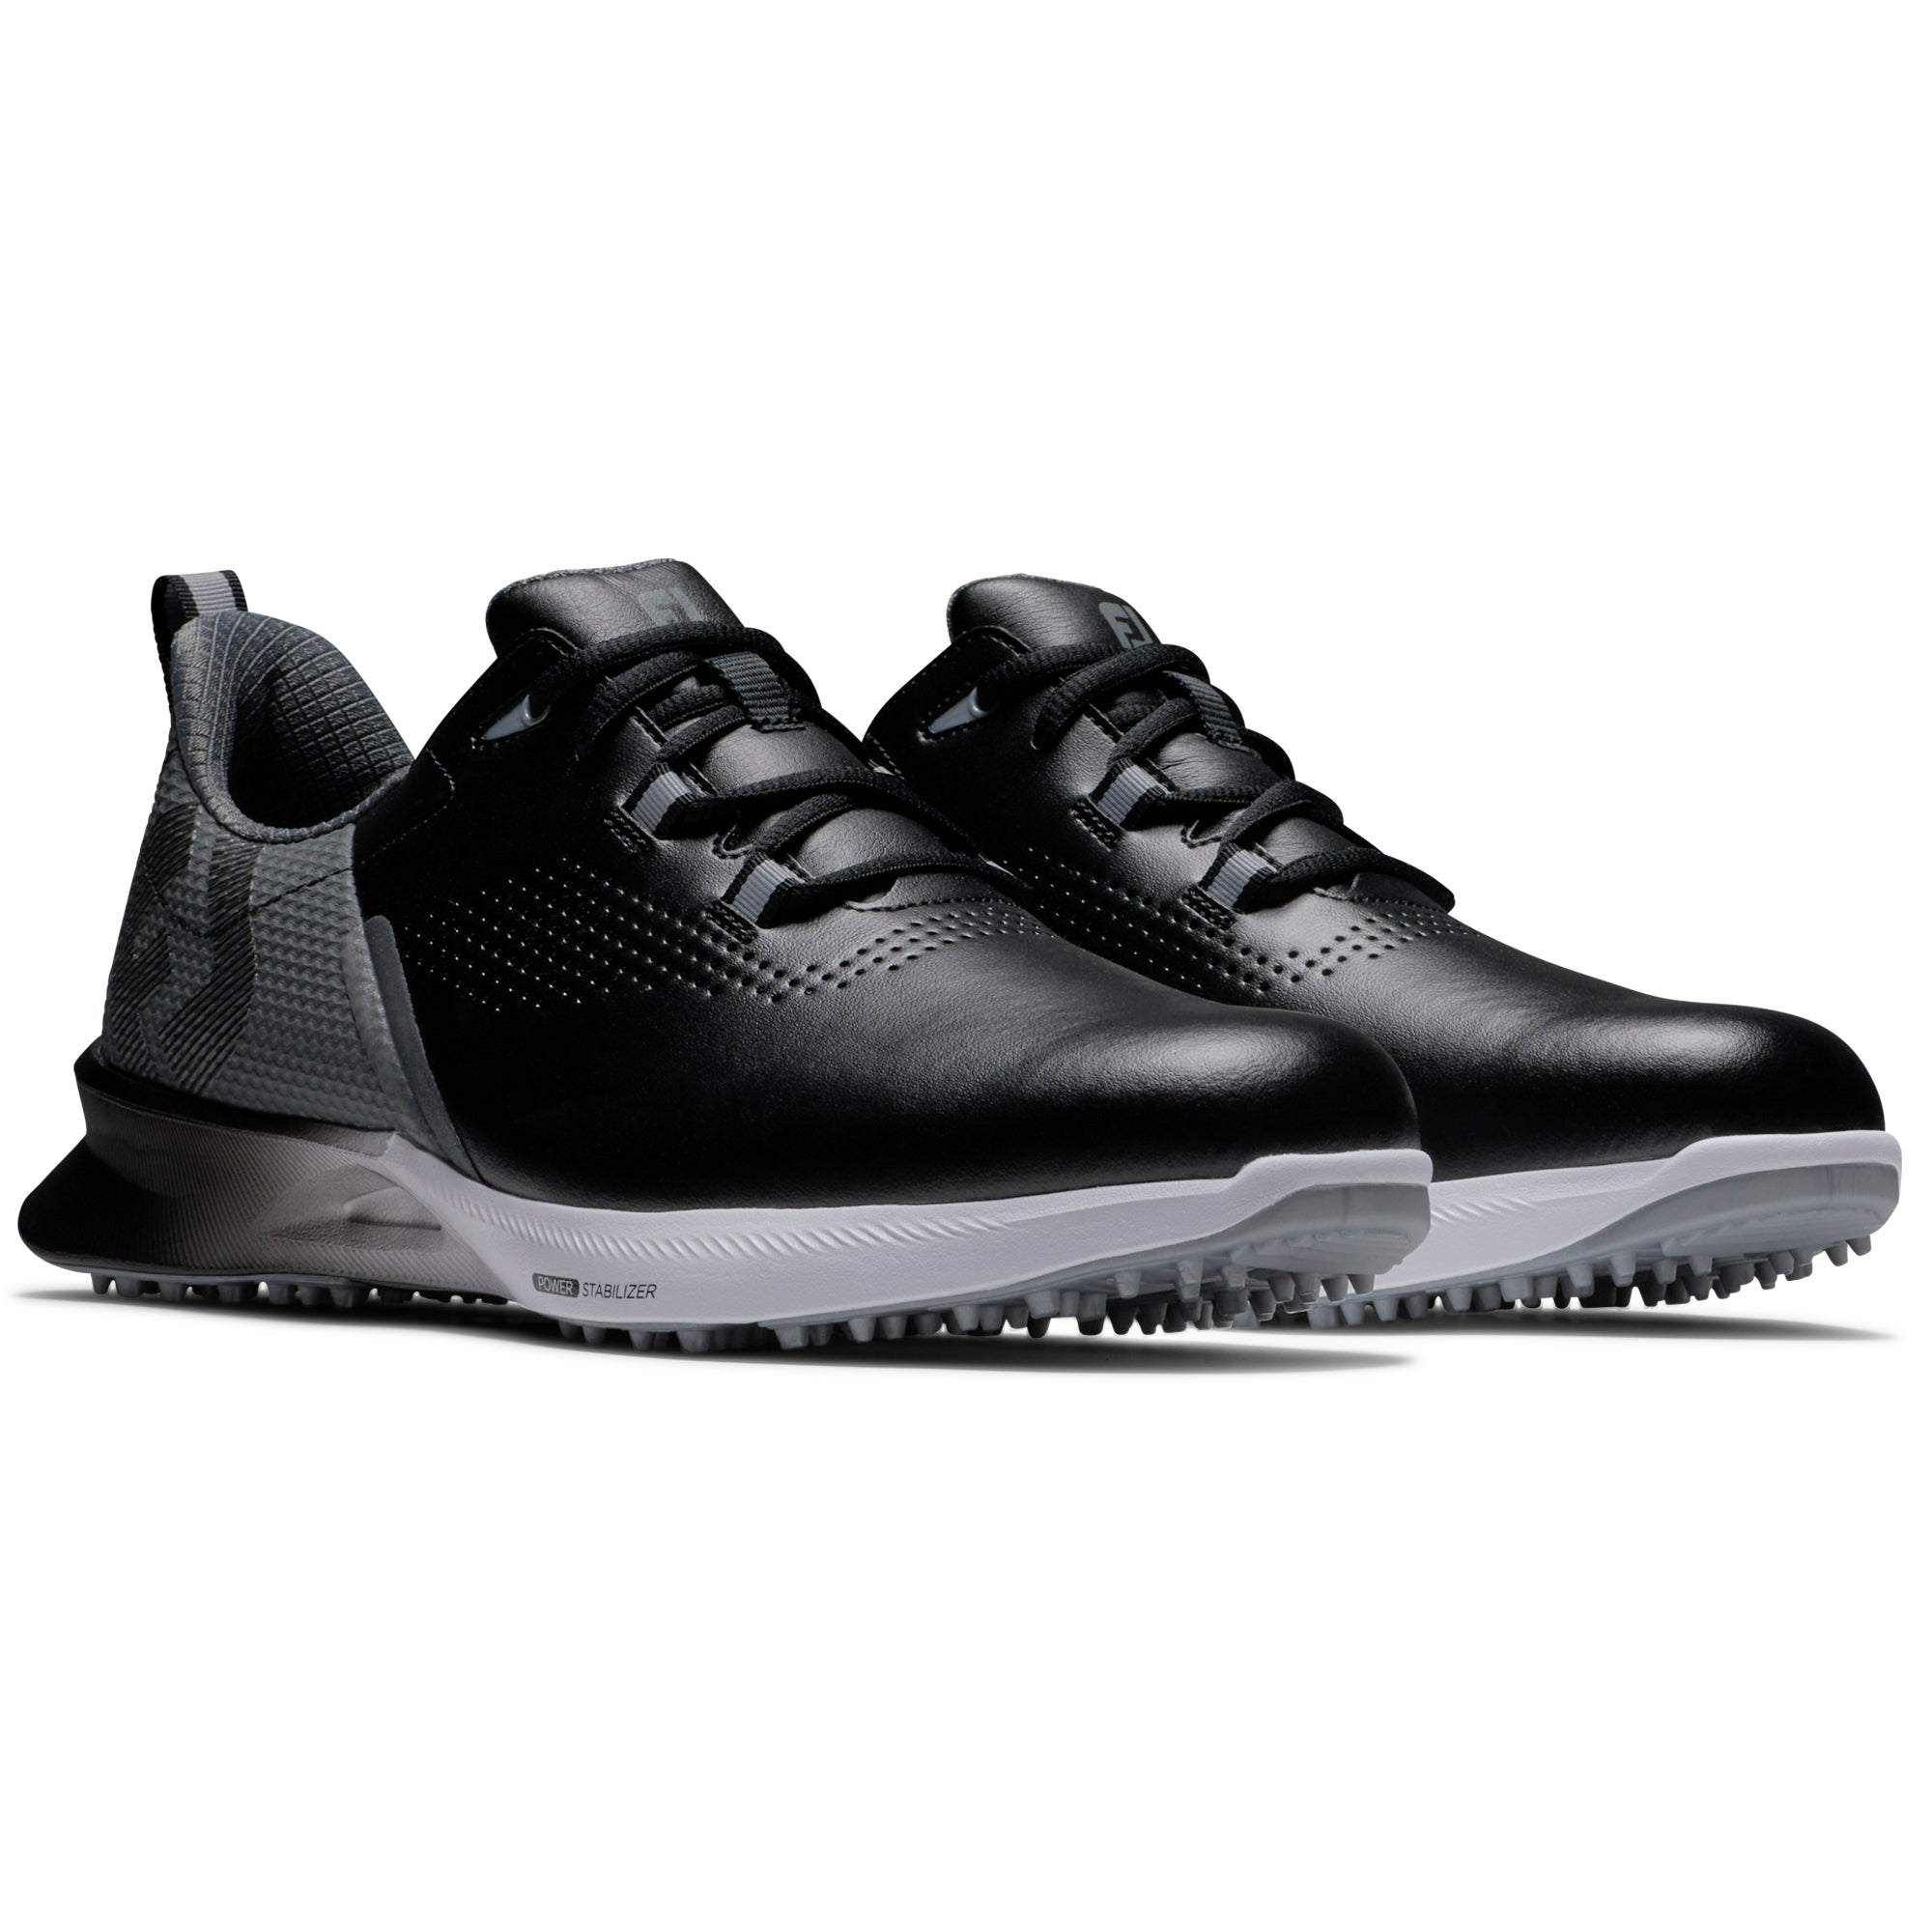 footjoy-fj-fuel-golf-shoes-55451-black